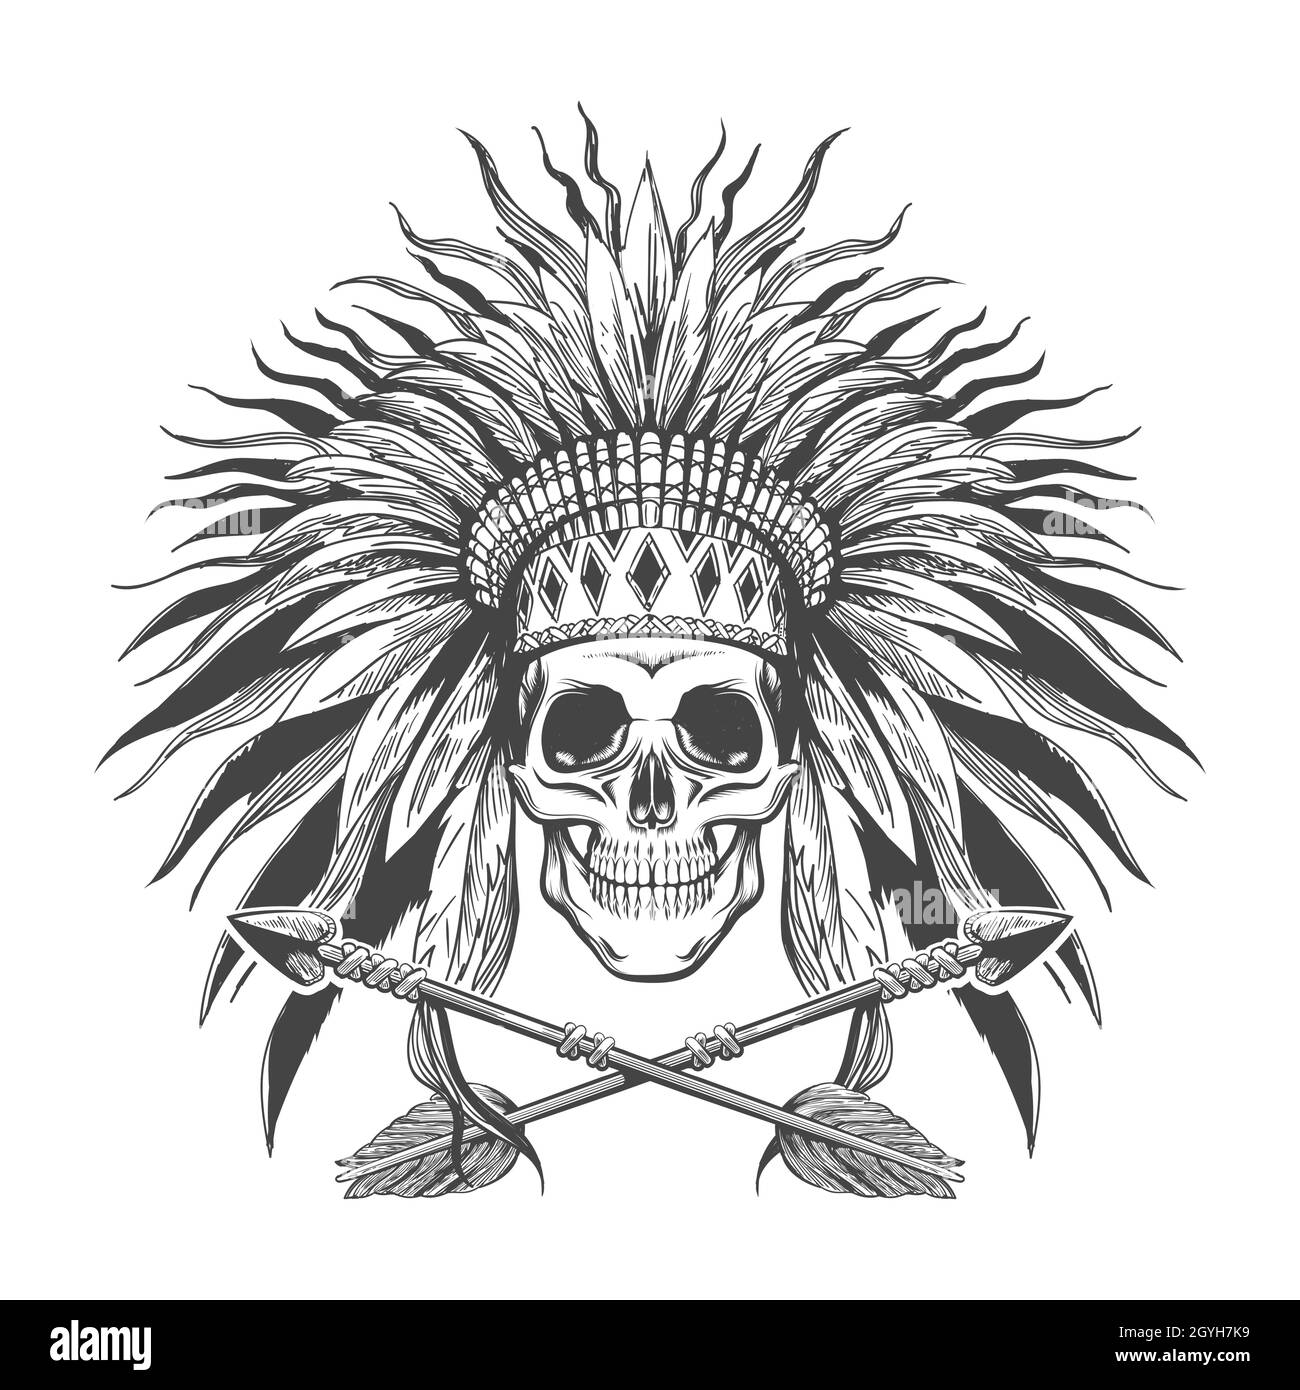 Menschlicher Schädel mit indianischer Kriegshaube und zwei gekreuzten Pfeilen Tattoo. Vektorgrafik. Stock Vektor